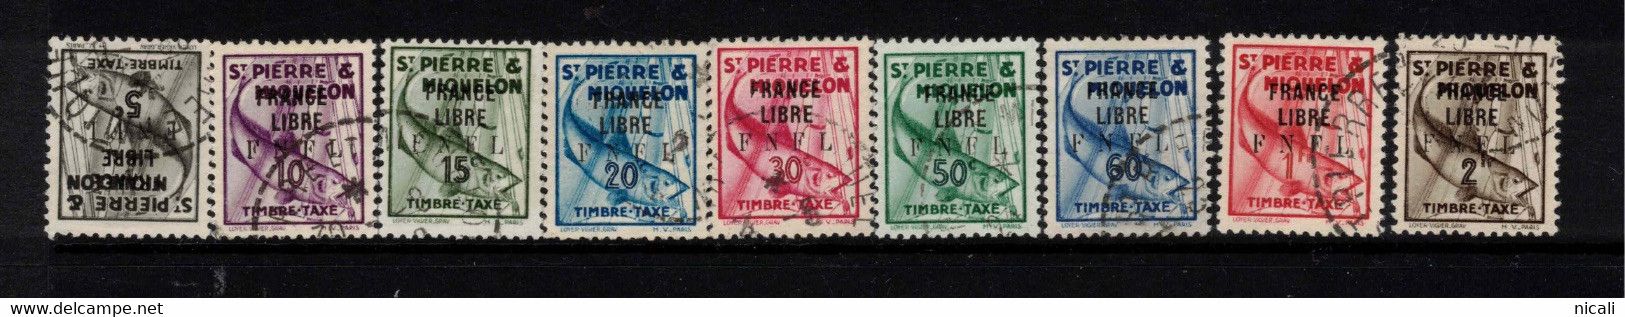 ST PIERRE & MIQUELON 1941 FRANCE LIBRE FNFL Postage Due SG D310-17 U #BPD05 - Gebraucht